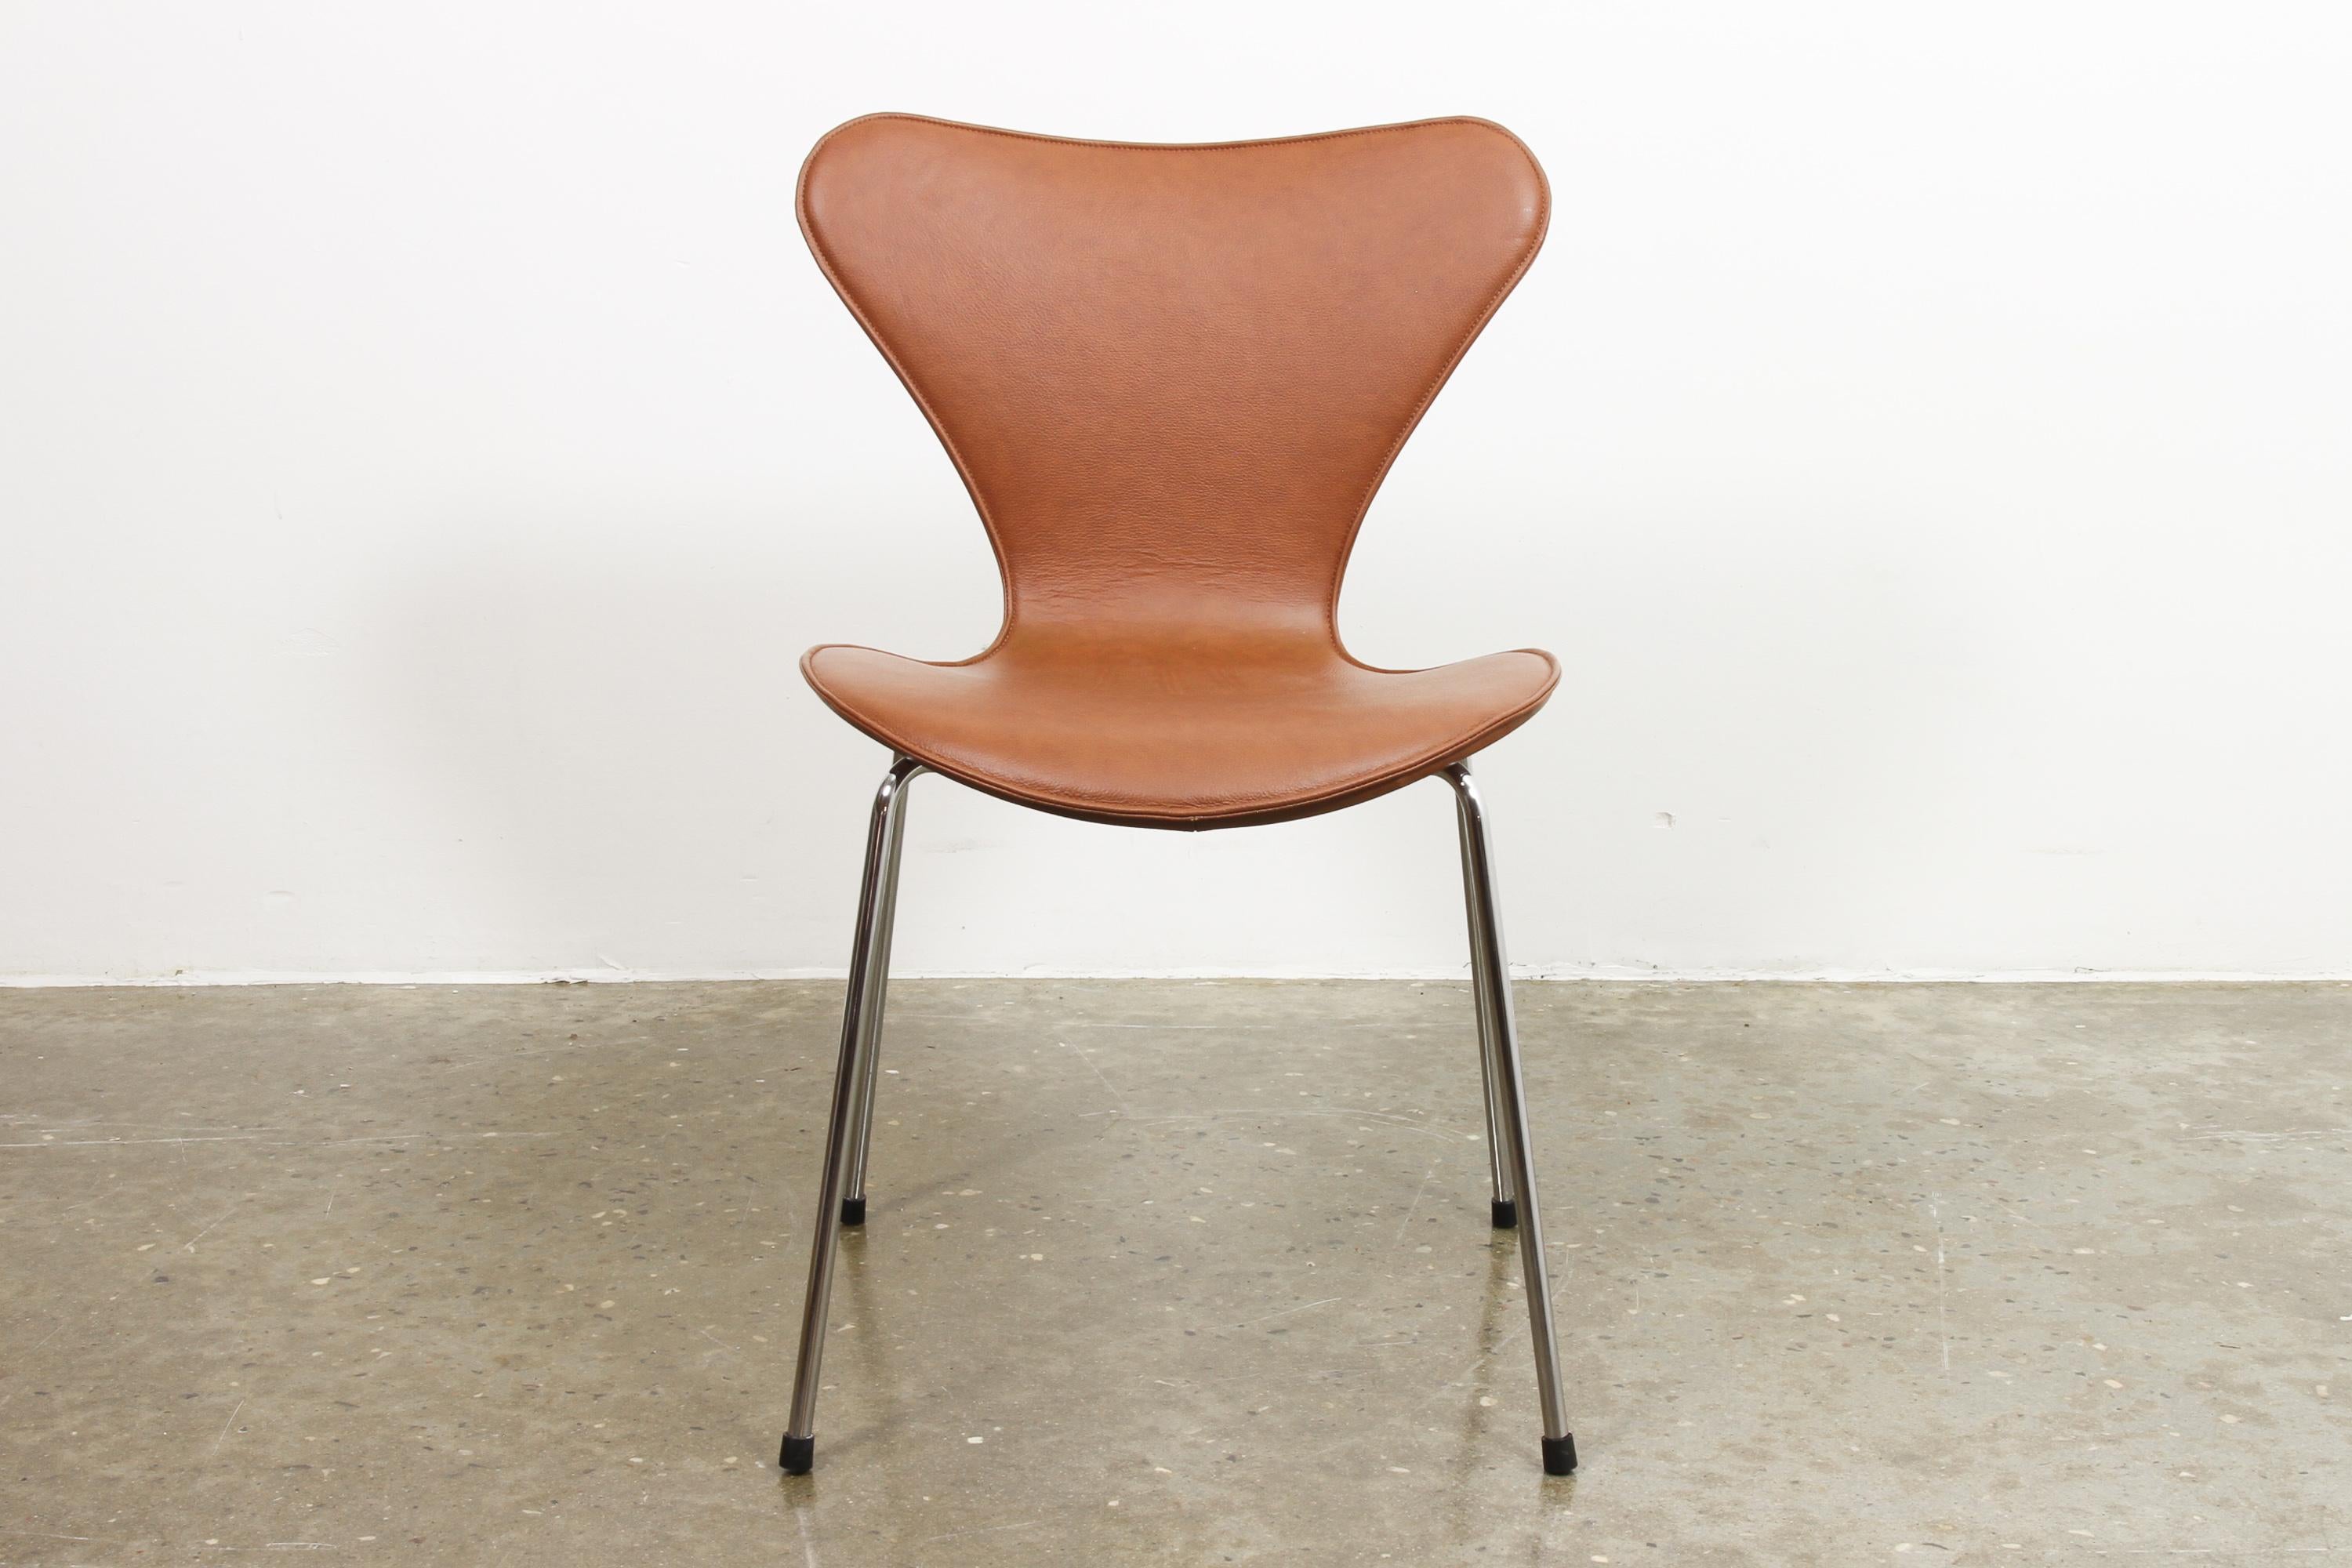 Arne Jacobsen Esszimmerstuhl Modell 3107 cognac Leder.
Modell 3107 auch bekannt als Serie 7, Butterfly Chair oder auf Dänisch Syveren. Einer der berühmtesten und ikonischsten Entwürfe des dänischen Architekten Arne Jacobsen, hergestellt von Fritz